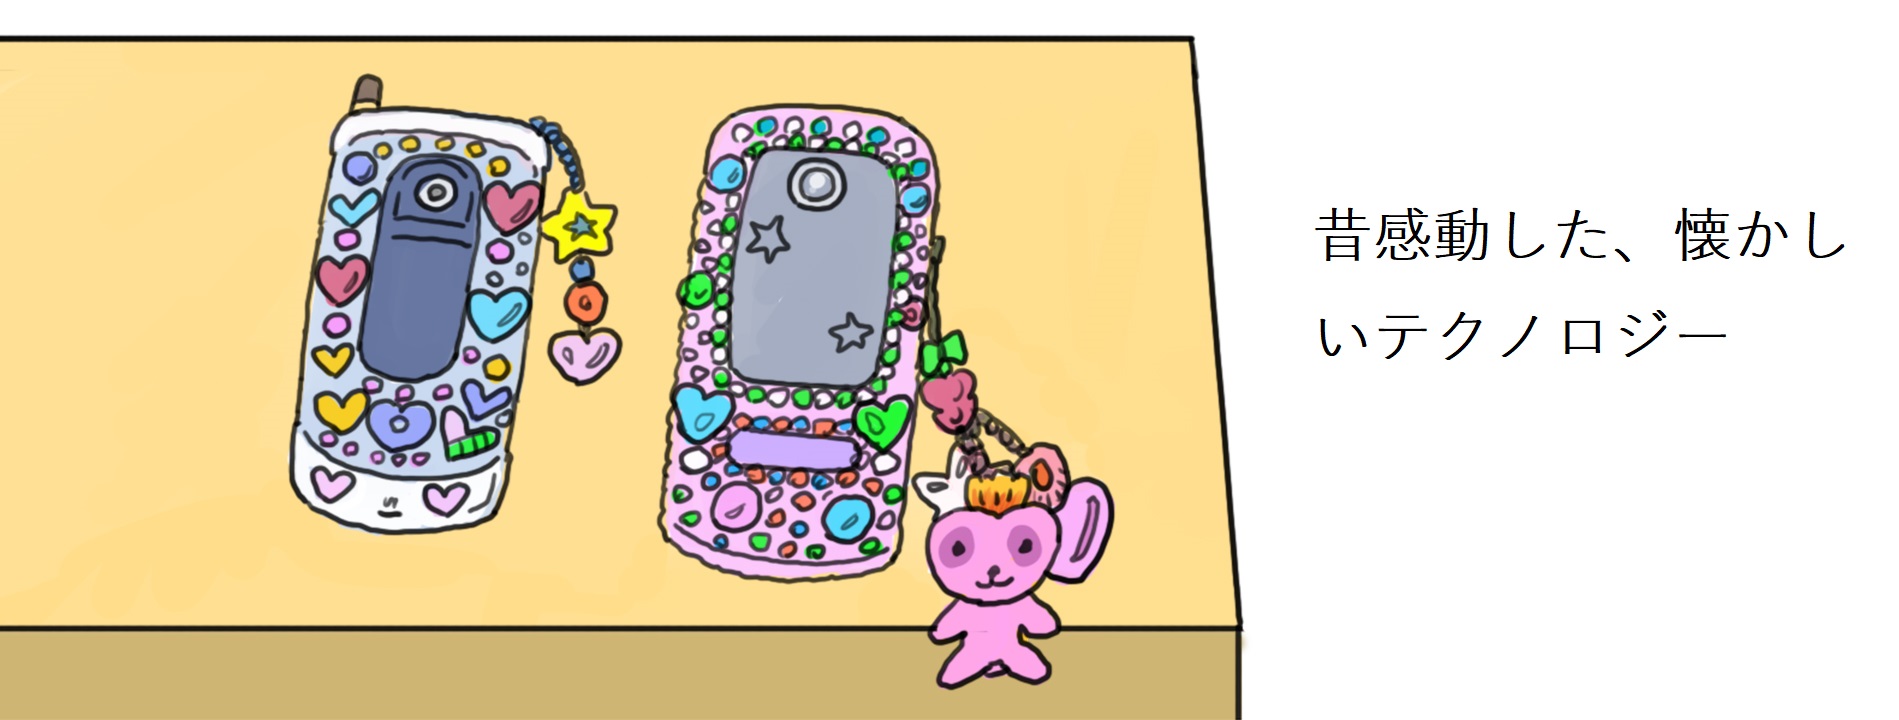 「昔感動した、懐かしいテクノロジー」というキャプションが付けられたイラスト。携帯電話が2台机の上に置かれている。左側の携帯電話は折りたたみ式の白色携帯電話、右側は画面スライド式のピンク色の携帯電話である。どちらの携帯電話も表面にカラフルなハート型や星型のアクセサリーでデコレーションされていて、大きなストラップがついている。